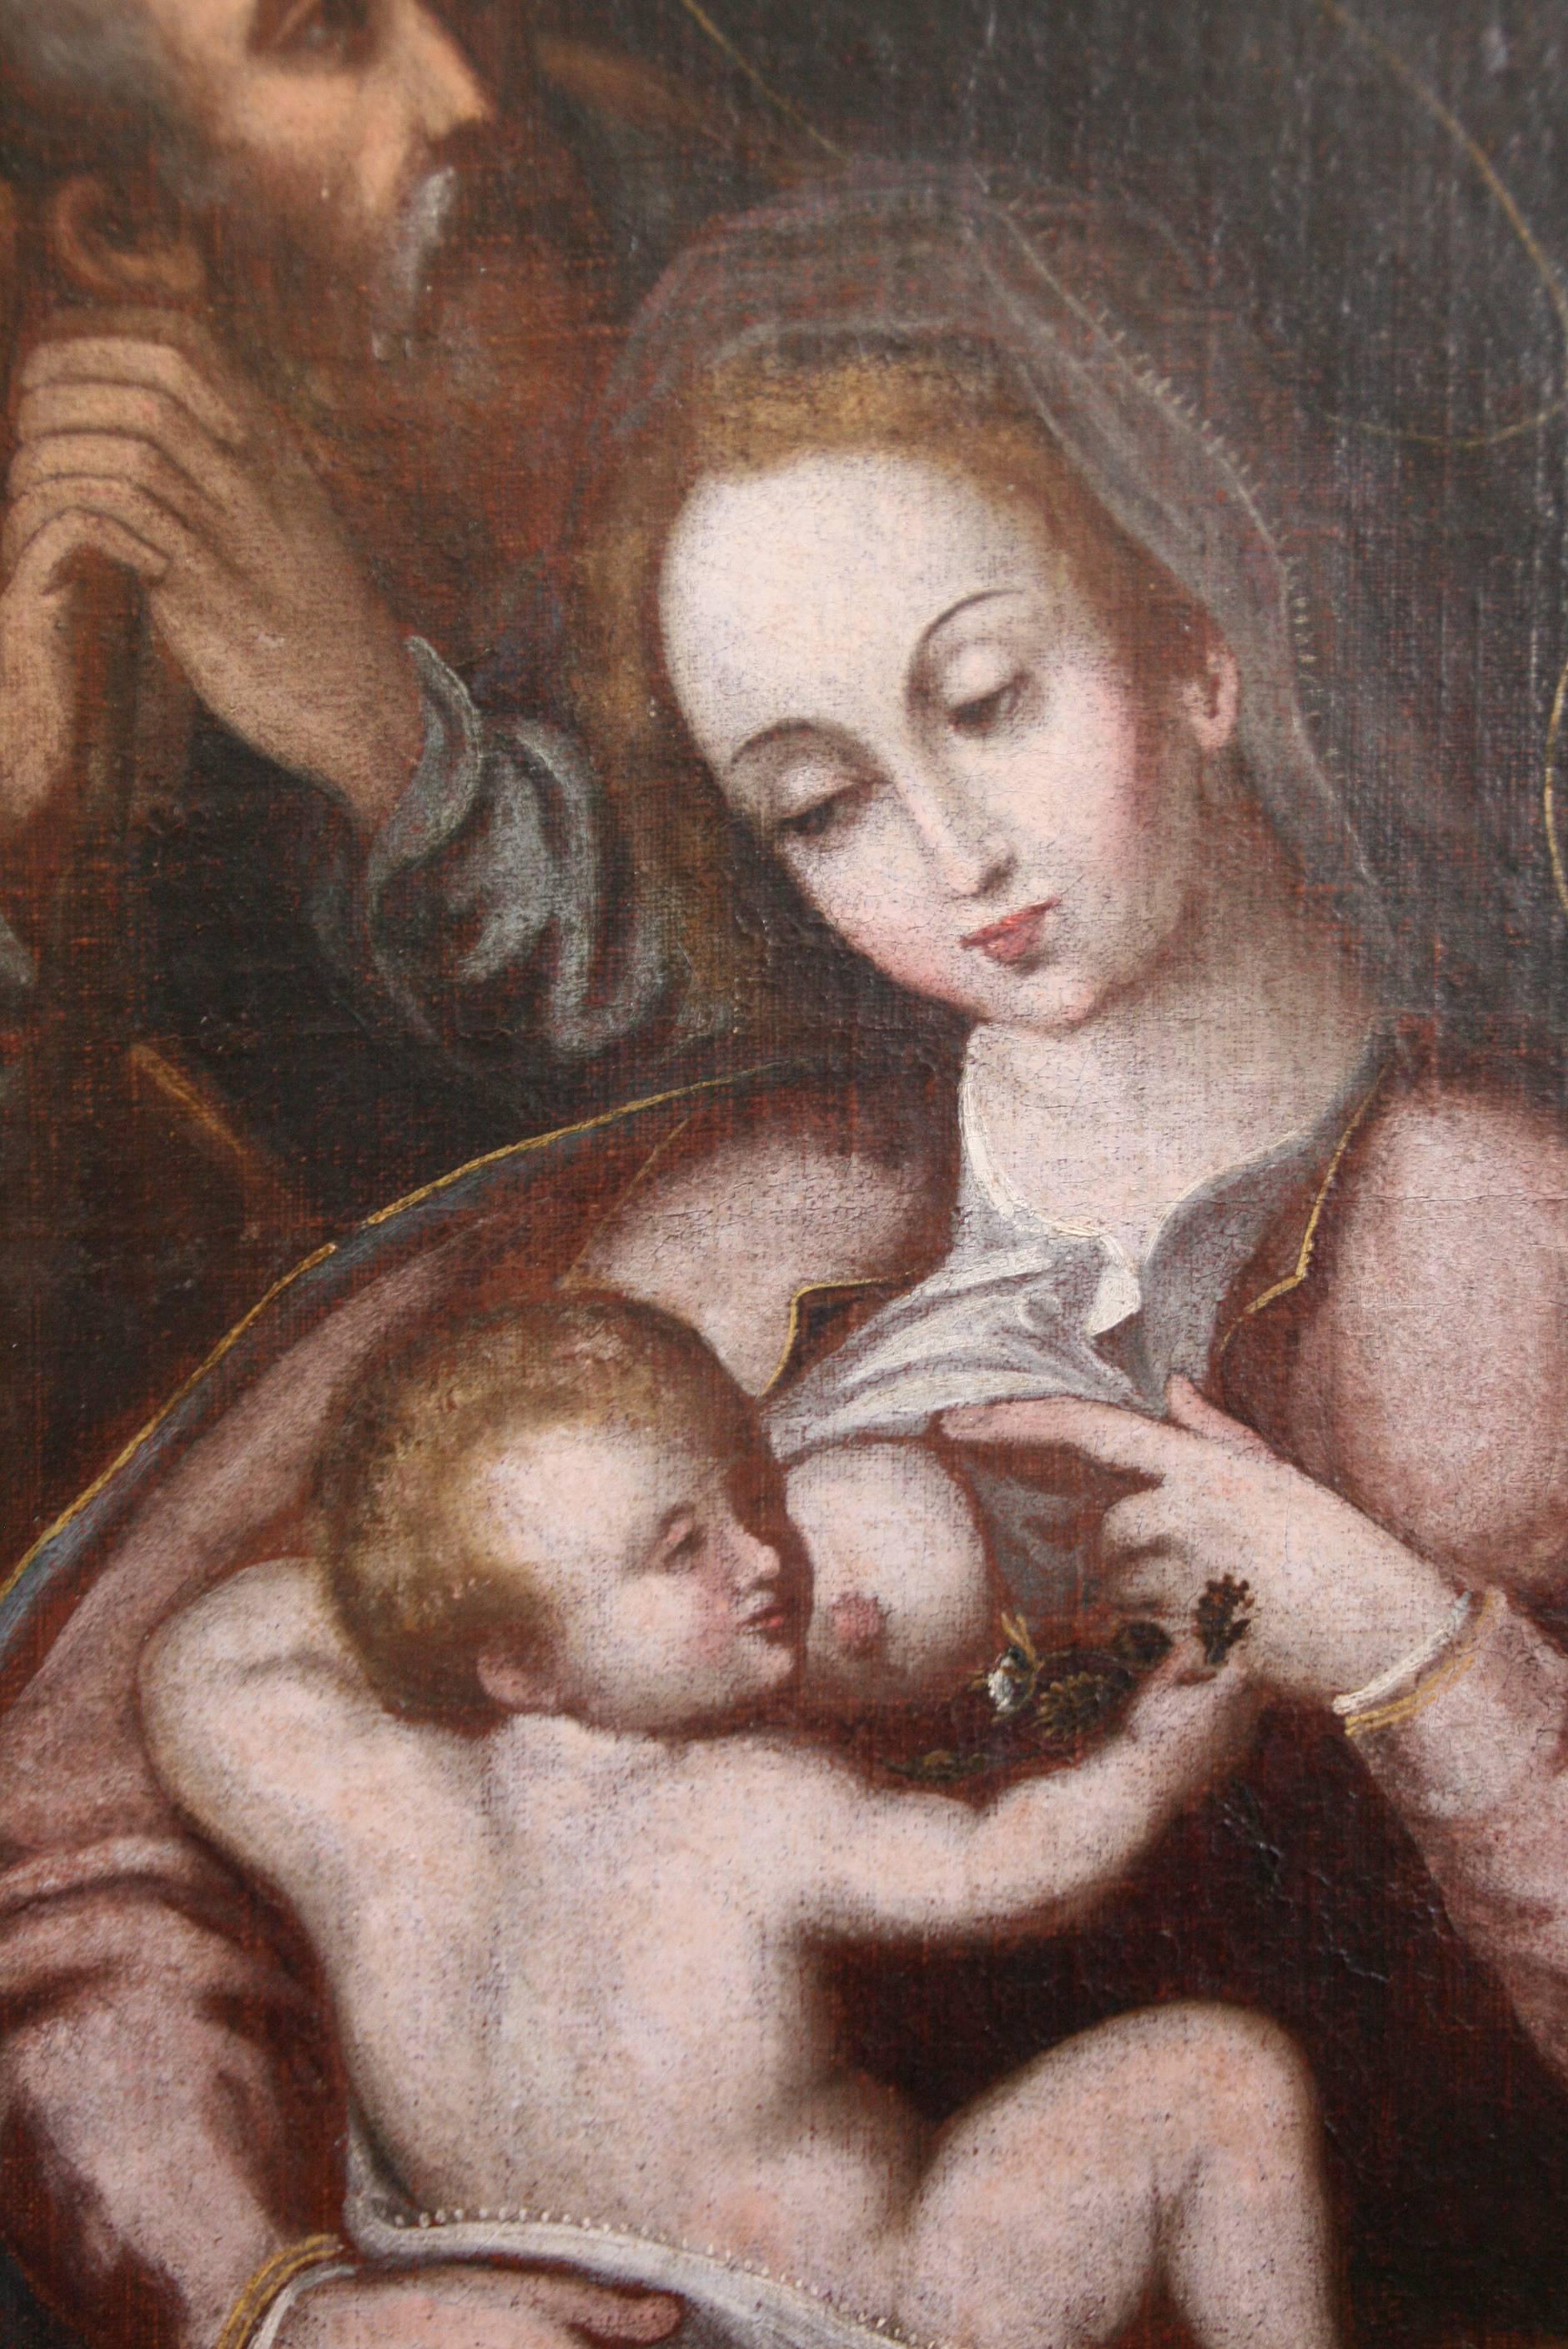 Belle huile sur toile avec quatre protagonistes, la Vierge allaitant l'enfant Jésus avec saint Joseph et un jeune saint Jean-Baptiste. Composition typique du XVIIe siècle avec les personnages secondaires à l'arrière-plan. Toile reliée et cadre